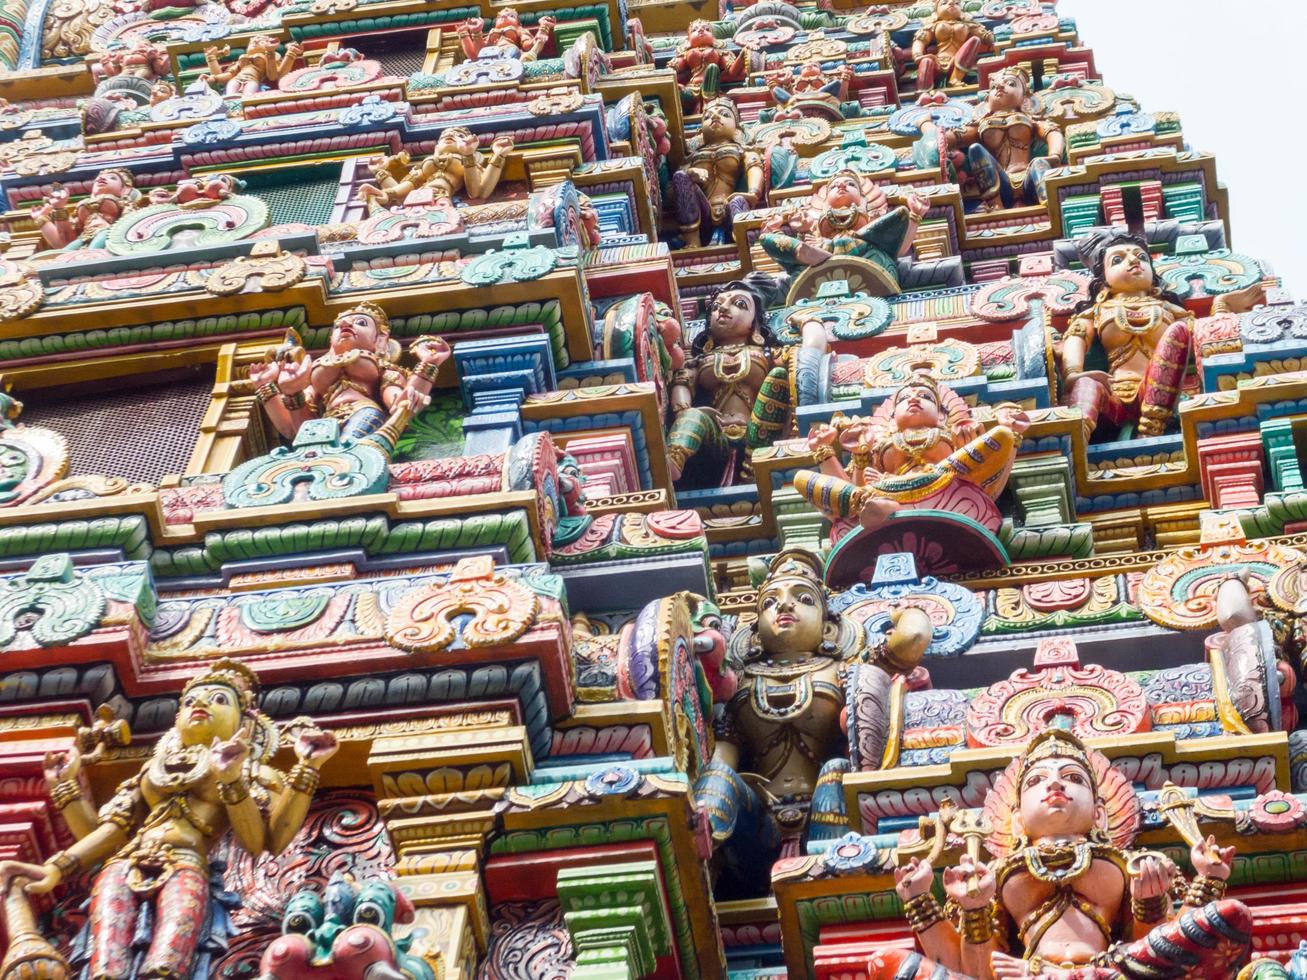 sri maha mariamman tempel silom bangkok thailand 16 oktober 2018byggd för att vara platsen tillägnad dyrkan av sri maha uma devi gudinnan av shiva.den 16 oktober 2018 i bangkok thailand. foto